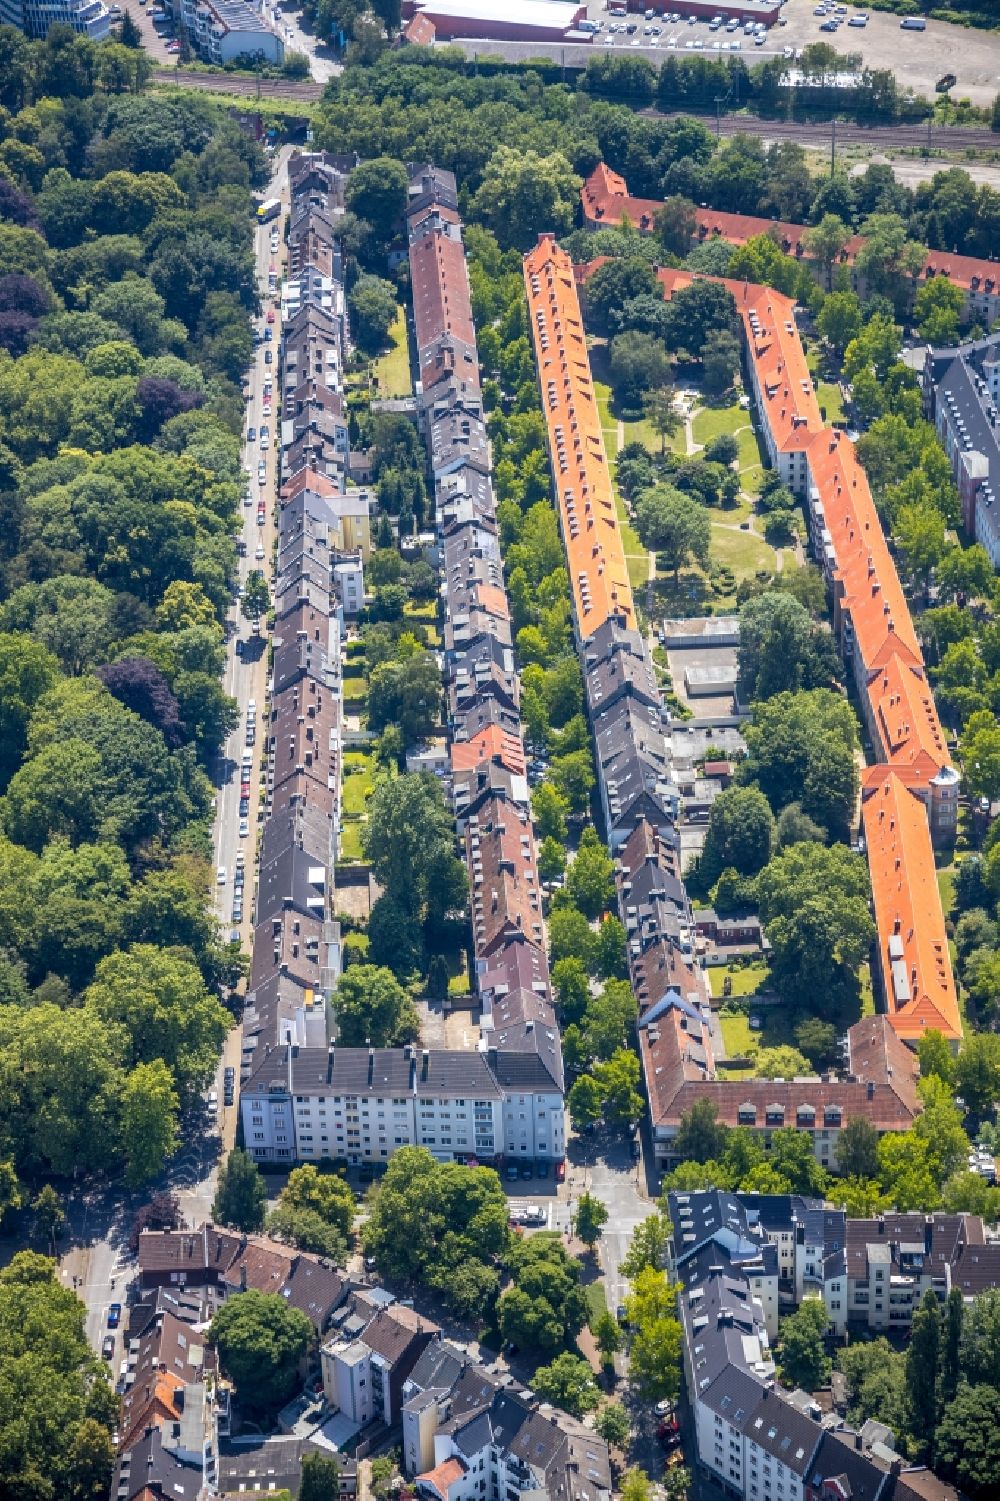 Luftbild Dortmund - Wohngebiet der Mehrfamilienhaussiedlung im Ortsteil Kaiserbrunnen in Dortmund im Bundesland Nordrhein-Westfalen, Deutschland